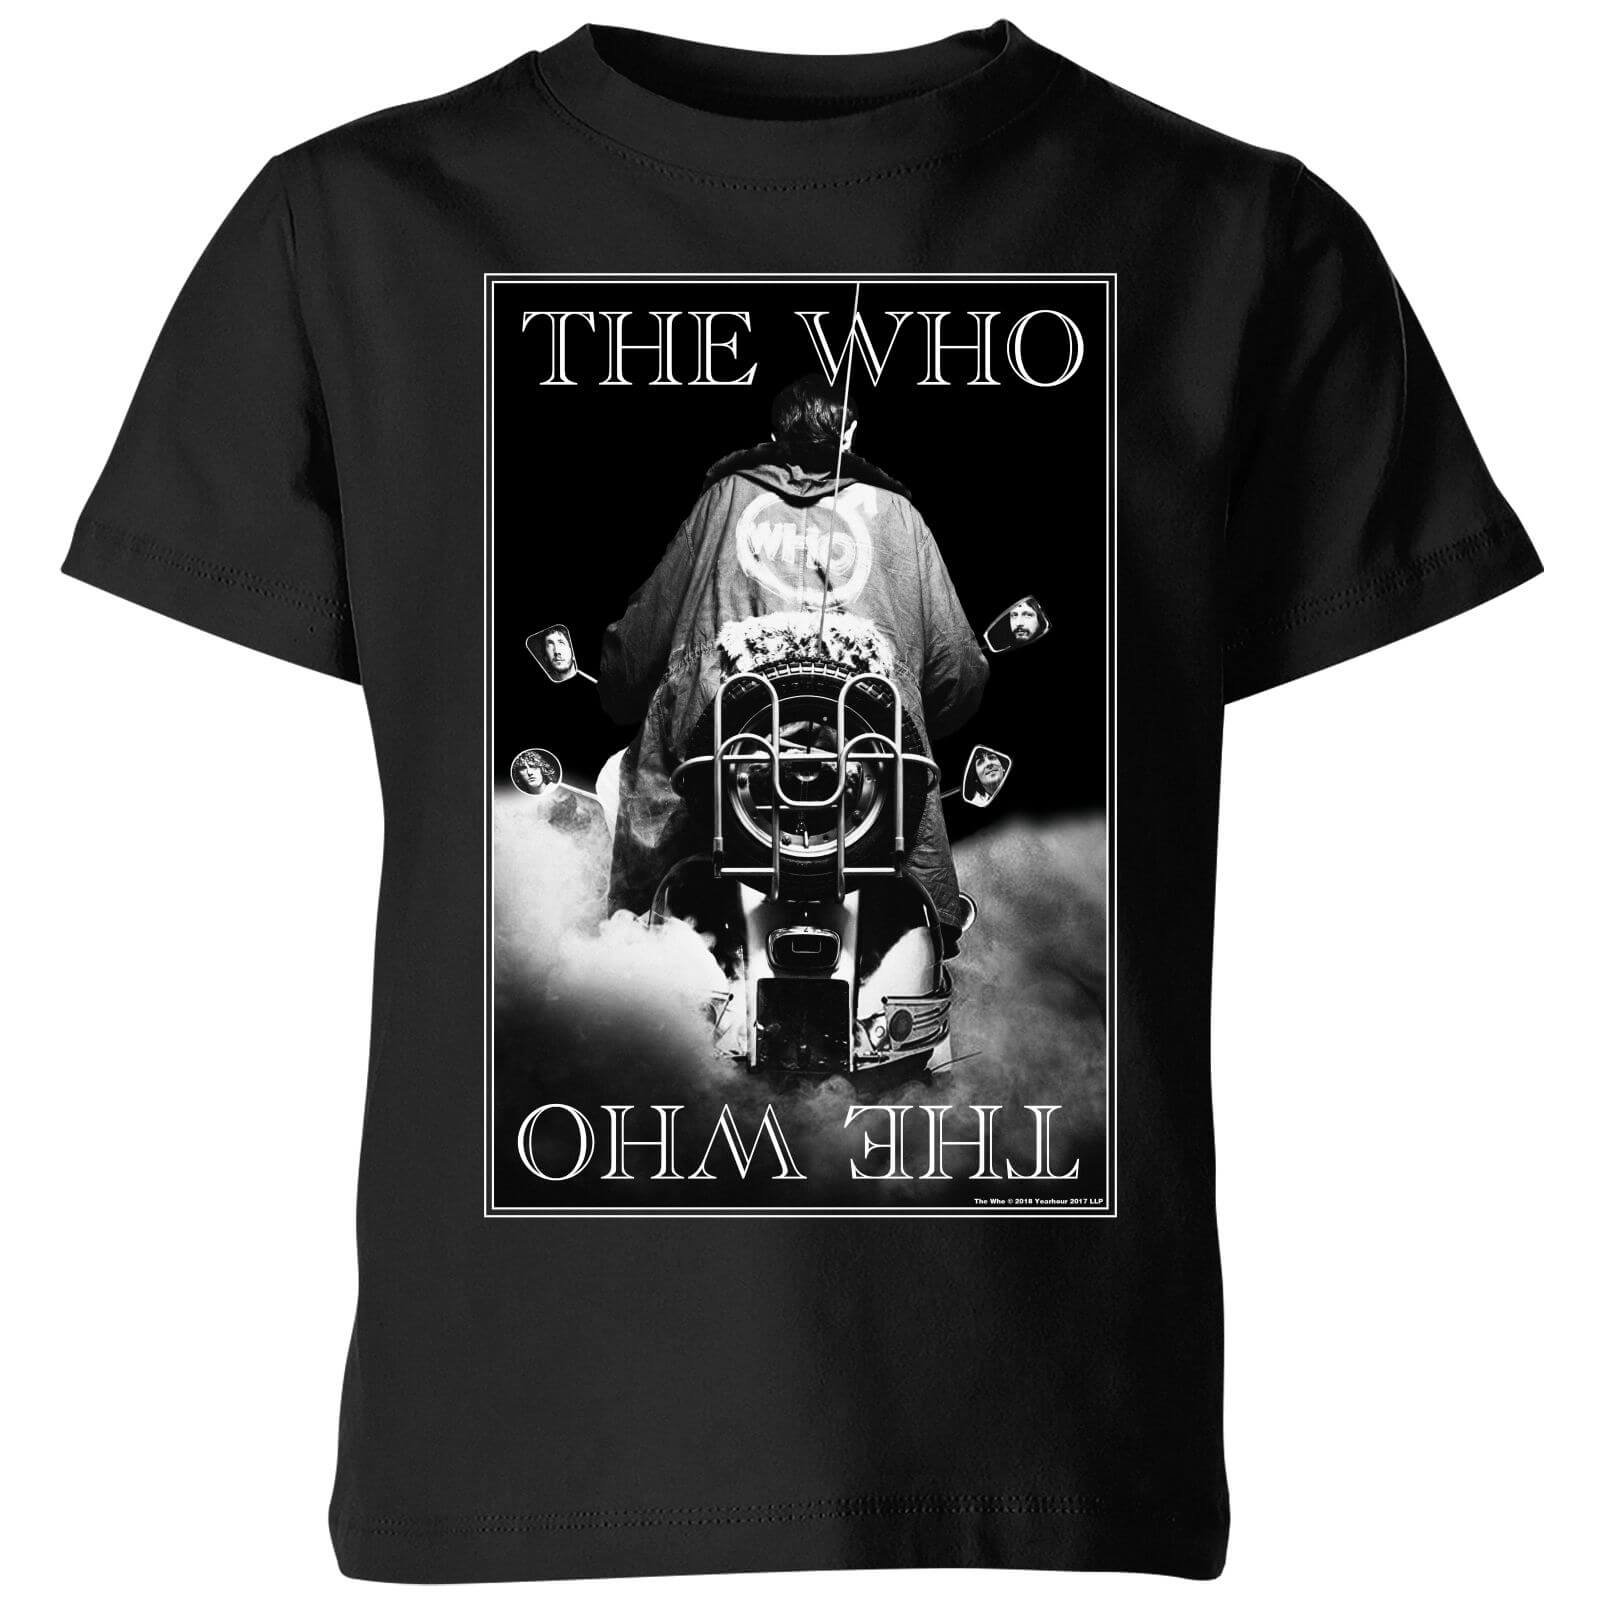 The Who Quadrophenia Kids' T-Shirt - Black - 7-8 Years - Black